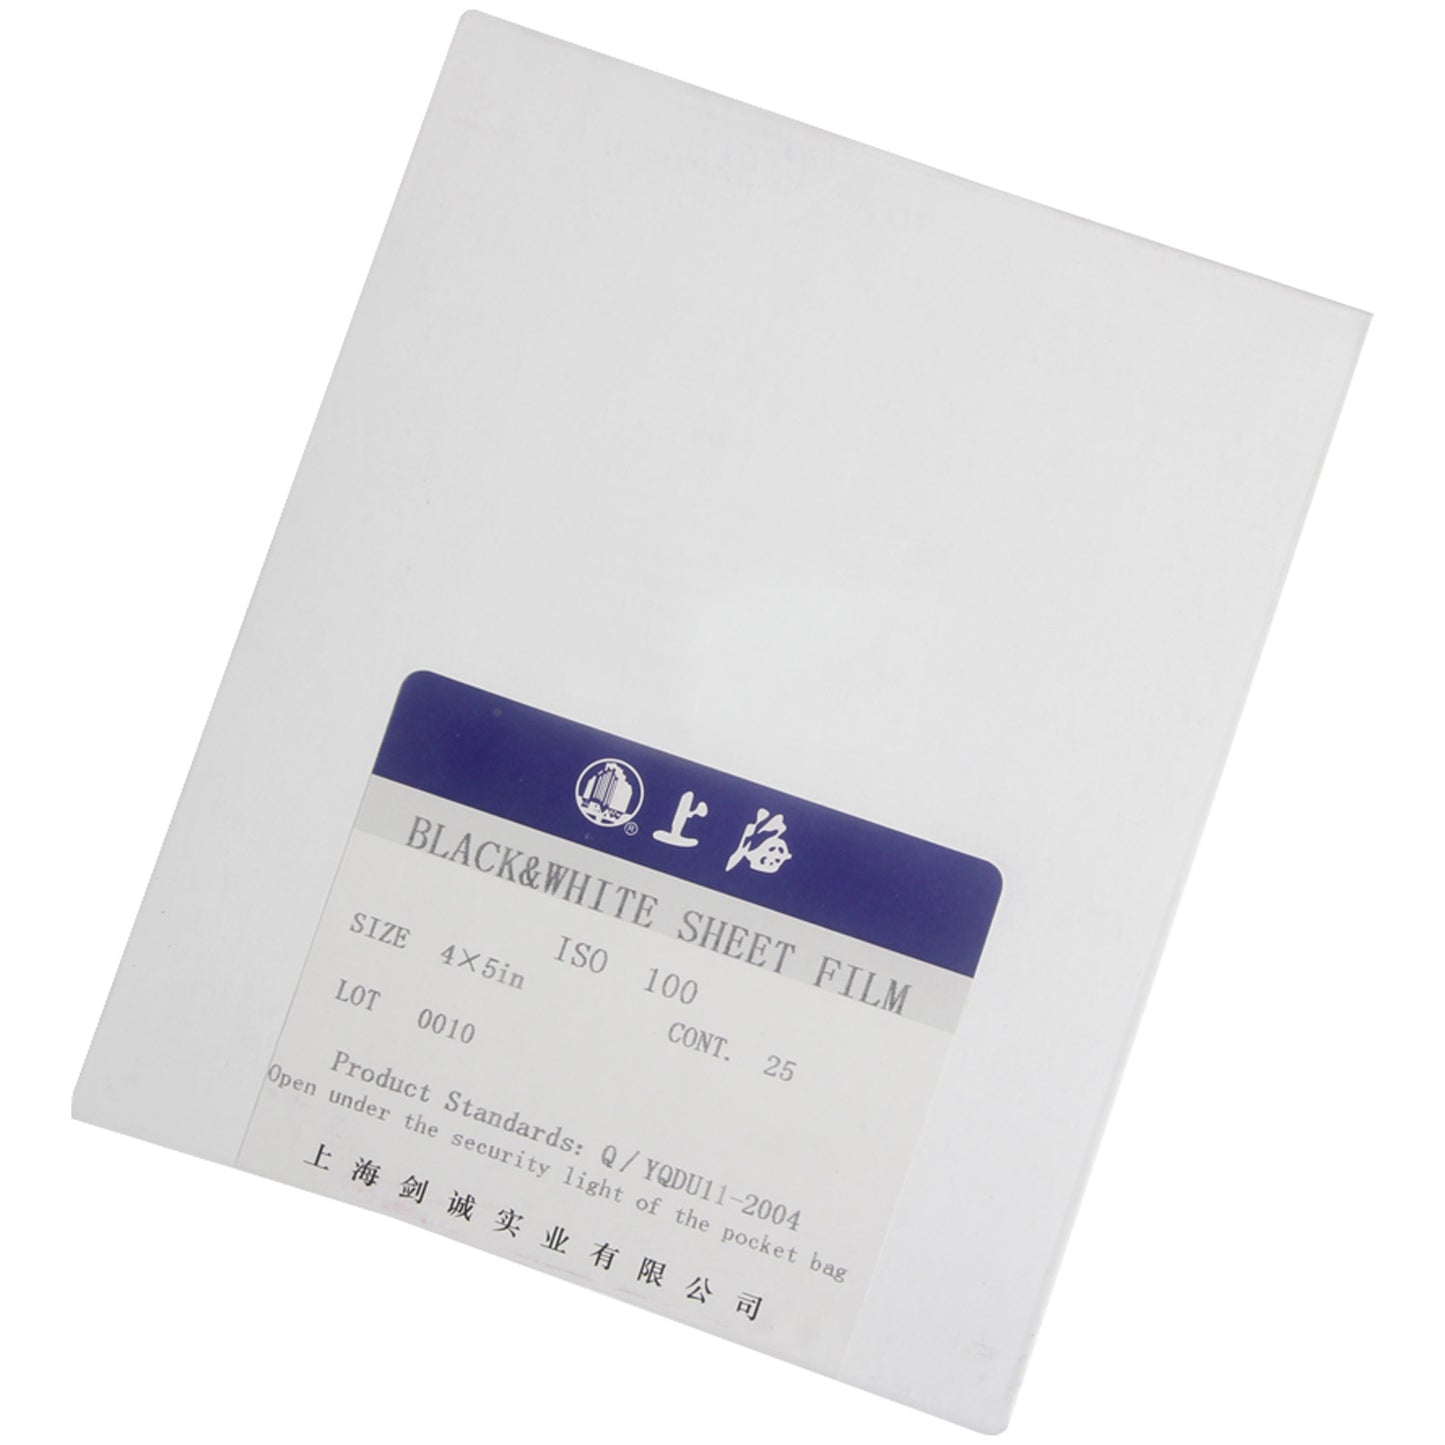 25 Sheets Shanghai 4x5 B/W Negative Sheet Films ISO 100 EXP Fresh